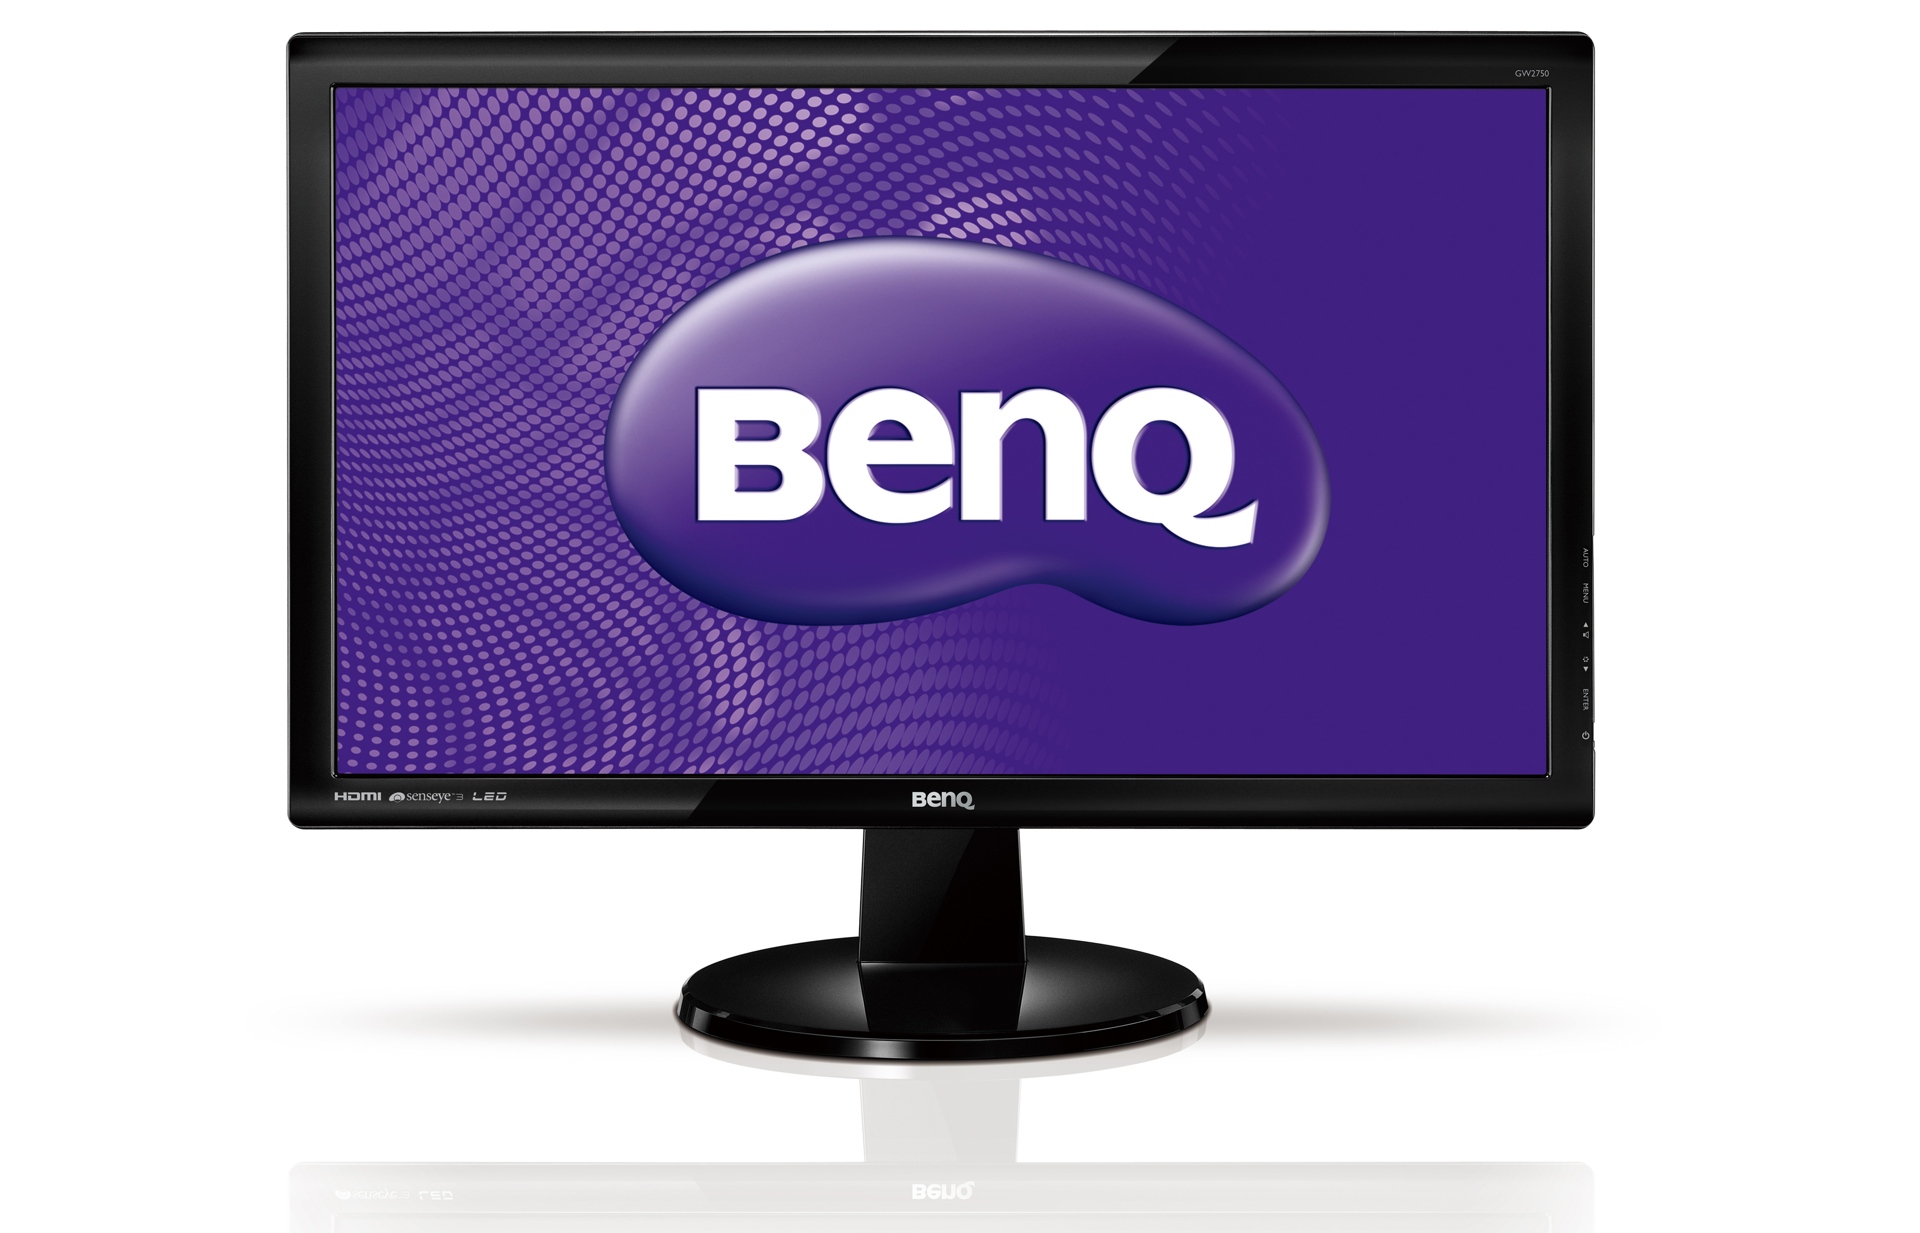 Immagine pubblicata in relazione al seguente contenuto: BenQ amplia la linea di monitor GW con 5 modelli Full HD | Nome immagine: news17306_1.jpg